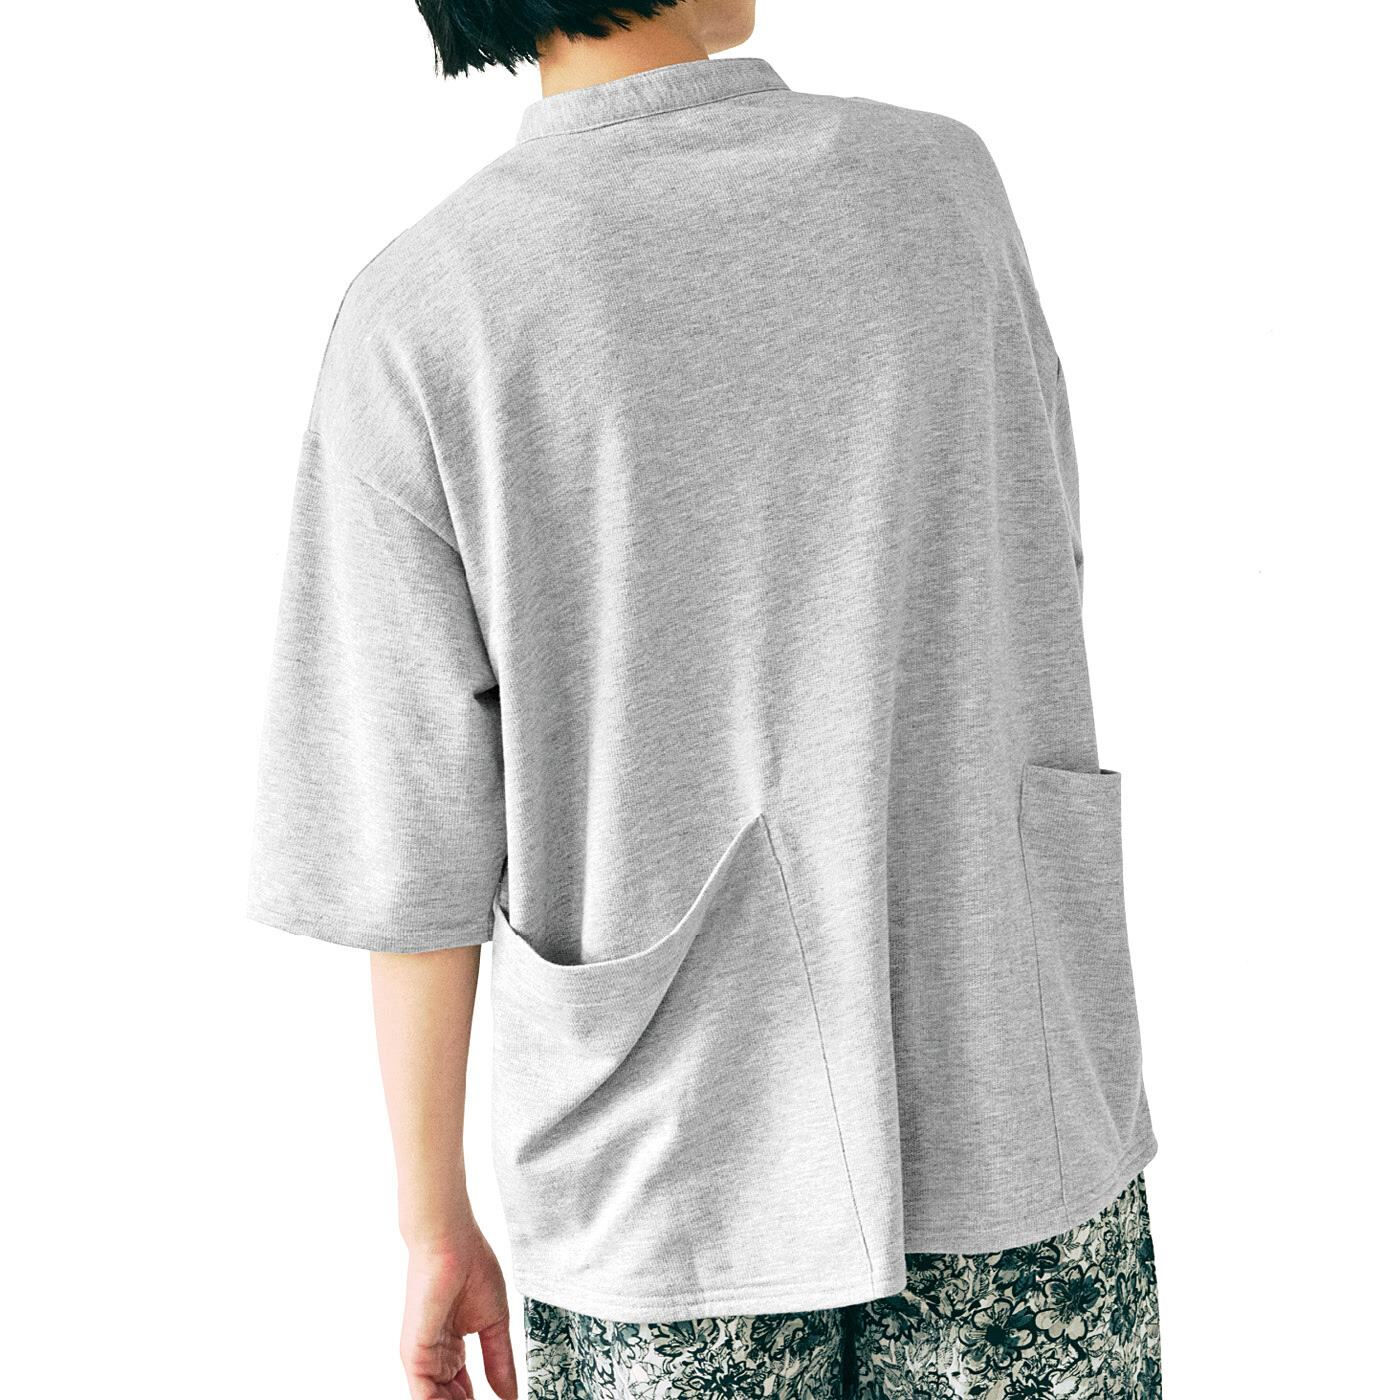 Real Stock|UP.de　着られるバッグ Tシャツ感覚なのにきれい見えする ポケットいっぱい てぶらなカットソースキッパーシャツ〈オフホワイト〉|これは参考画像です。お届けするカラーとは異なります。